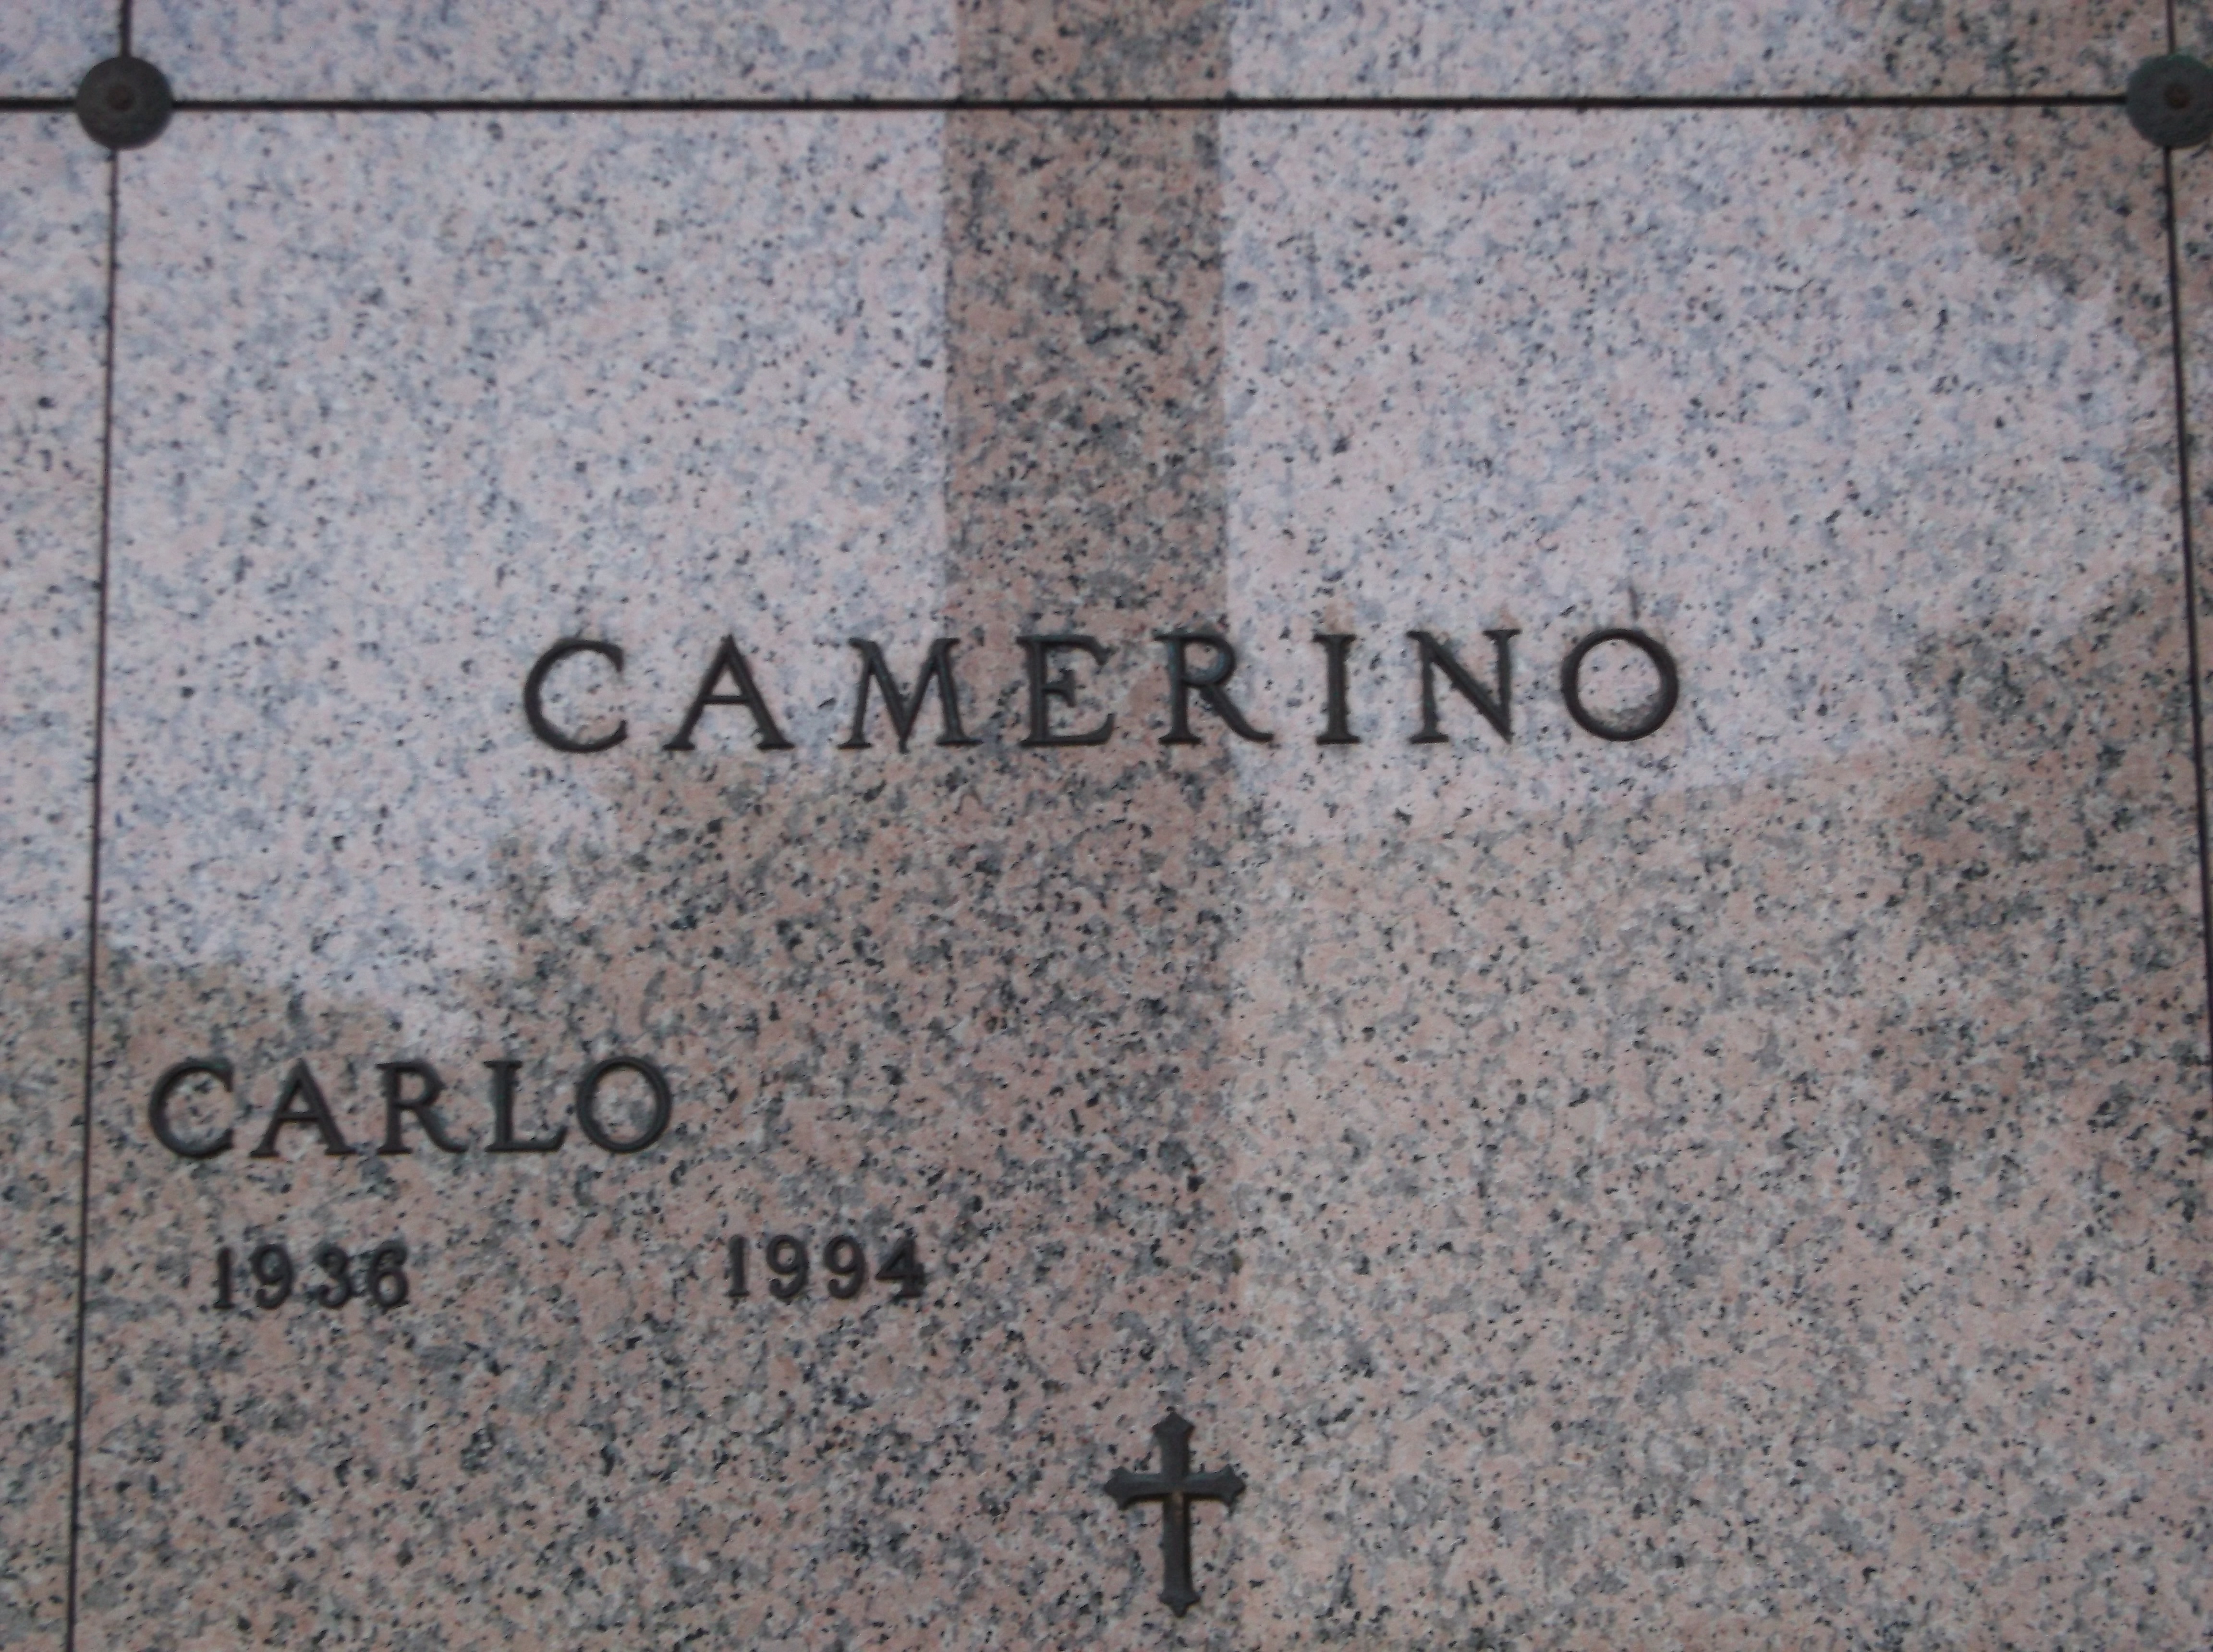 Carlo Camerino